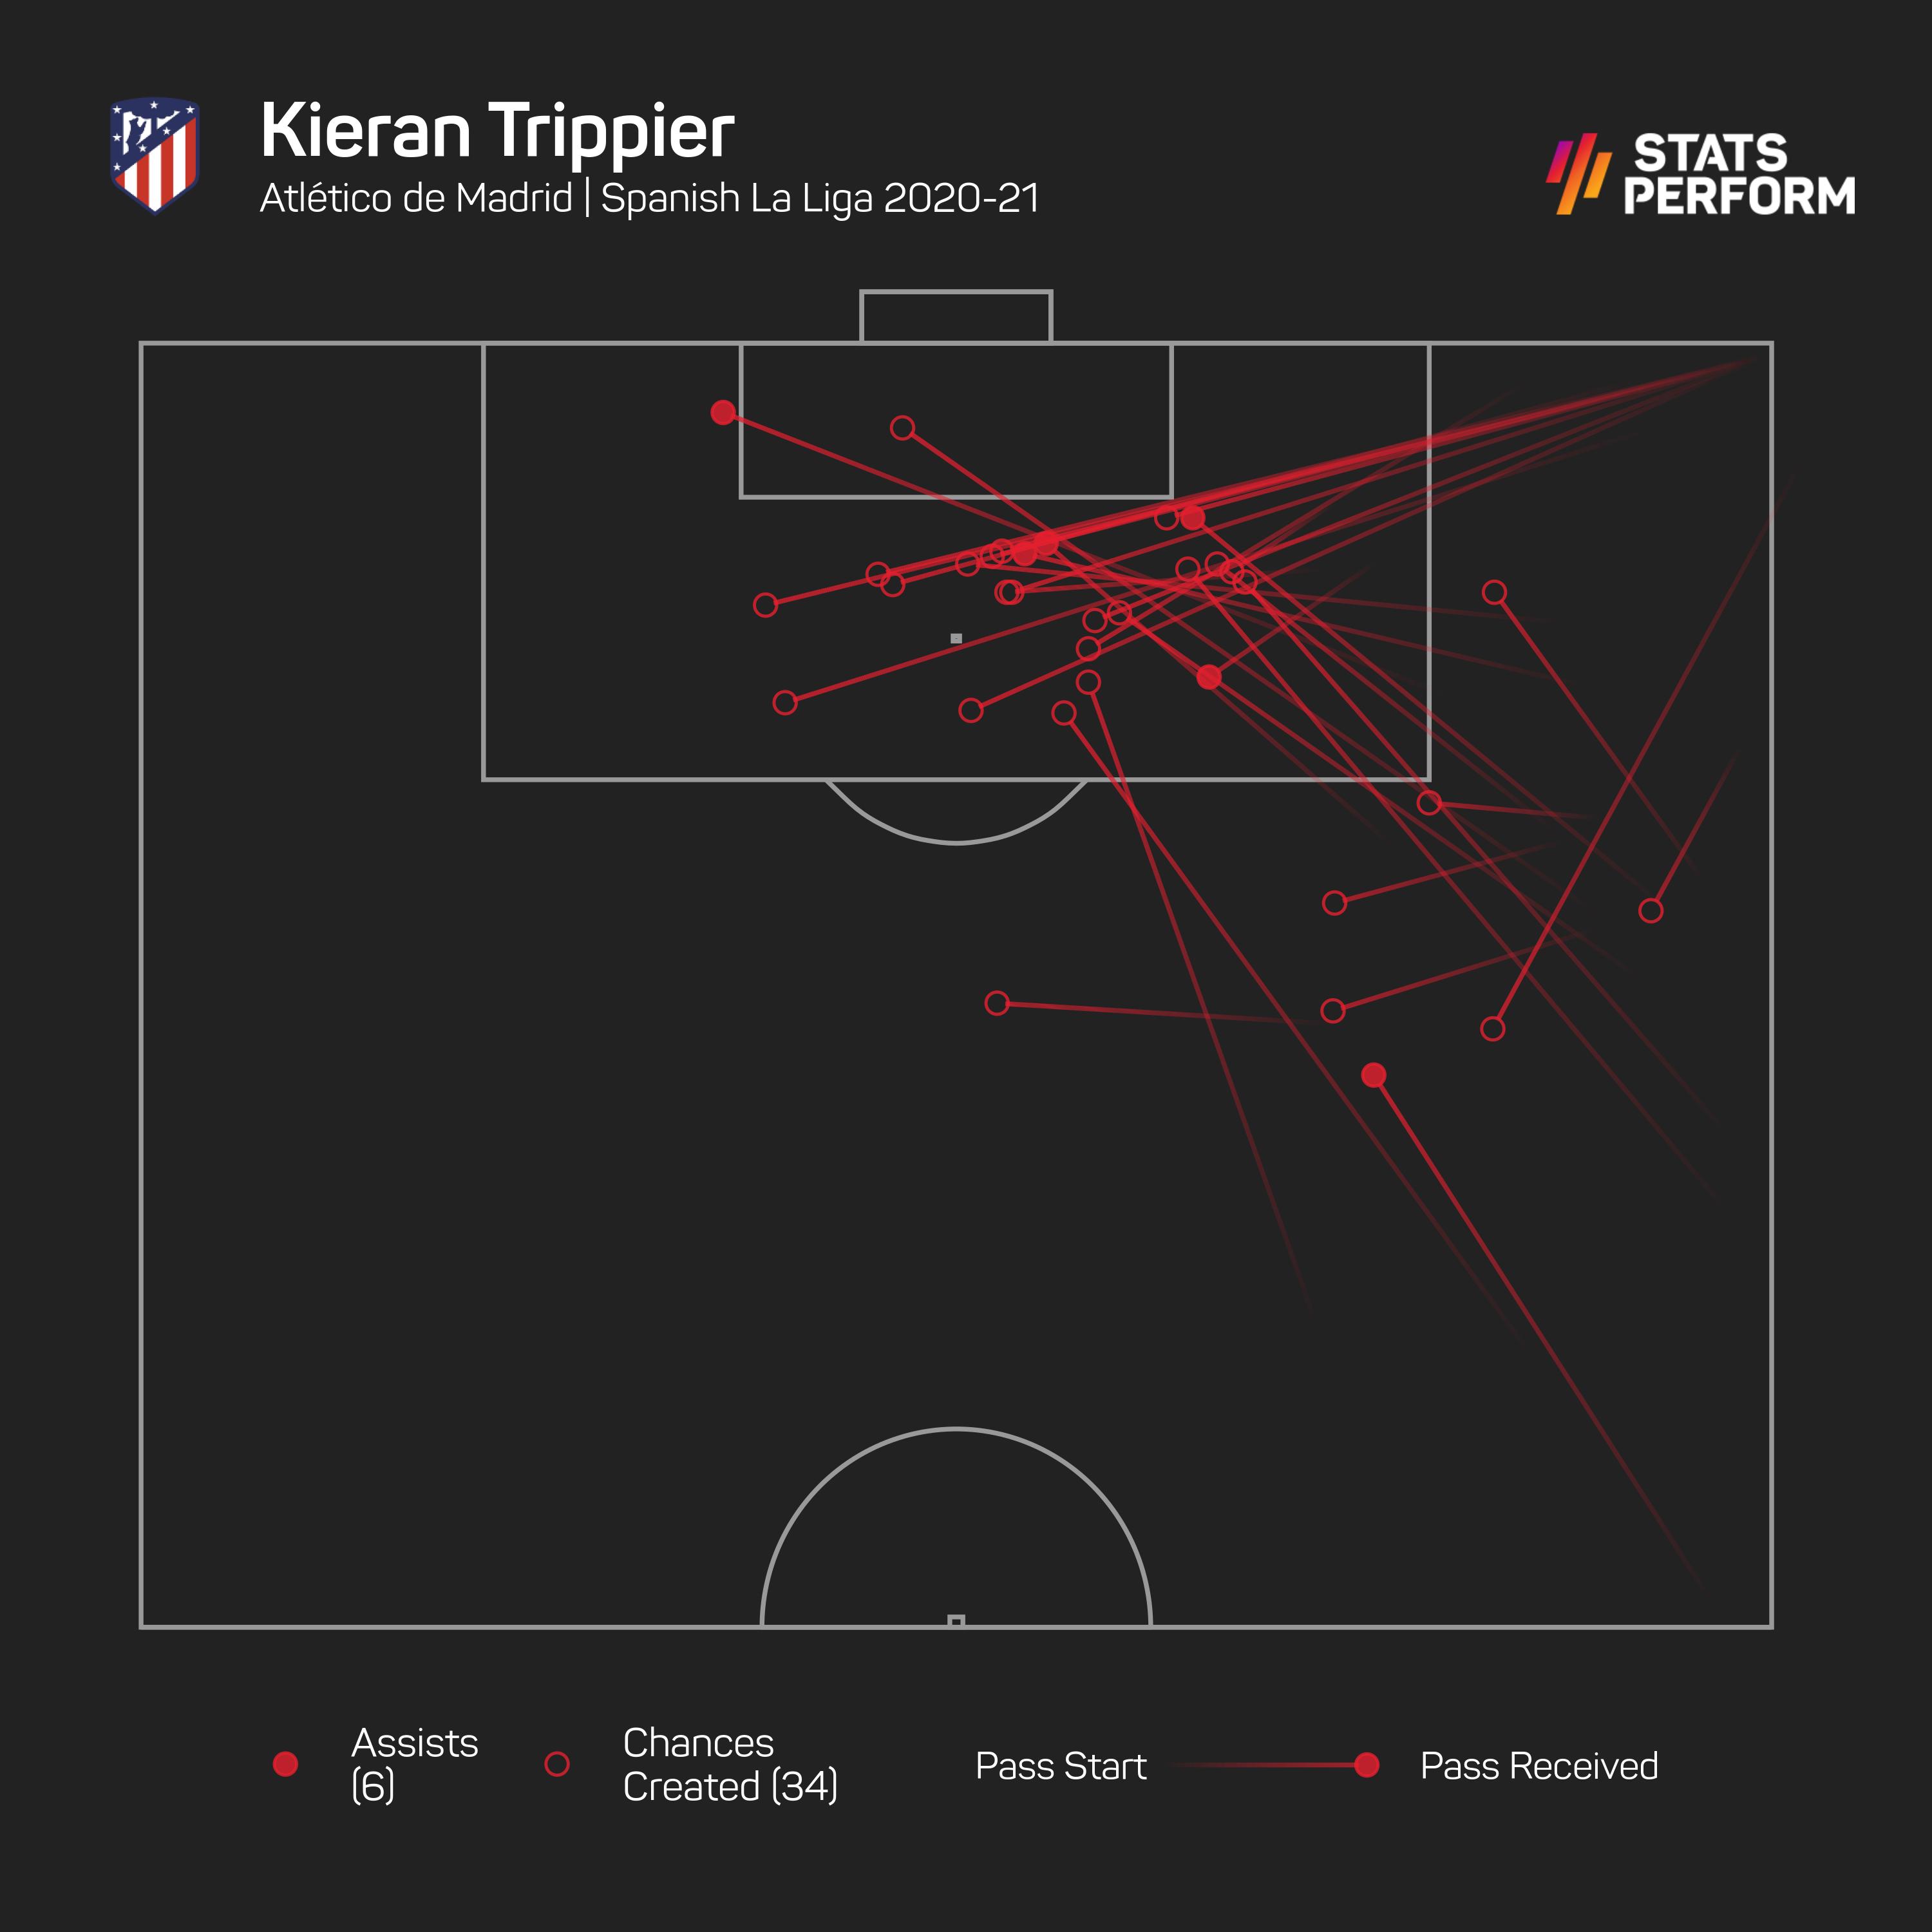 Kieran Trippier provided an impressive six assists in LaLiga last season